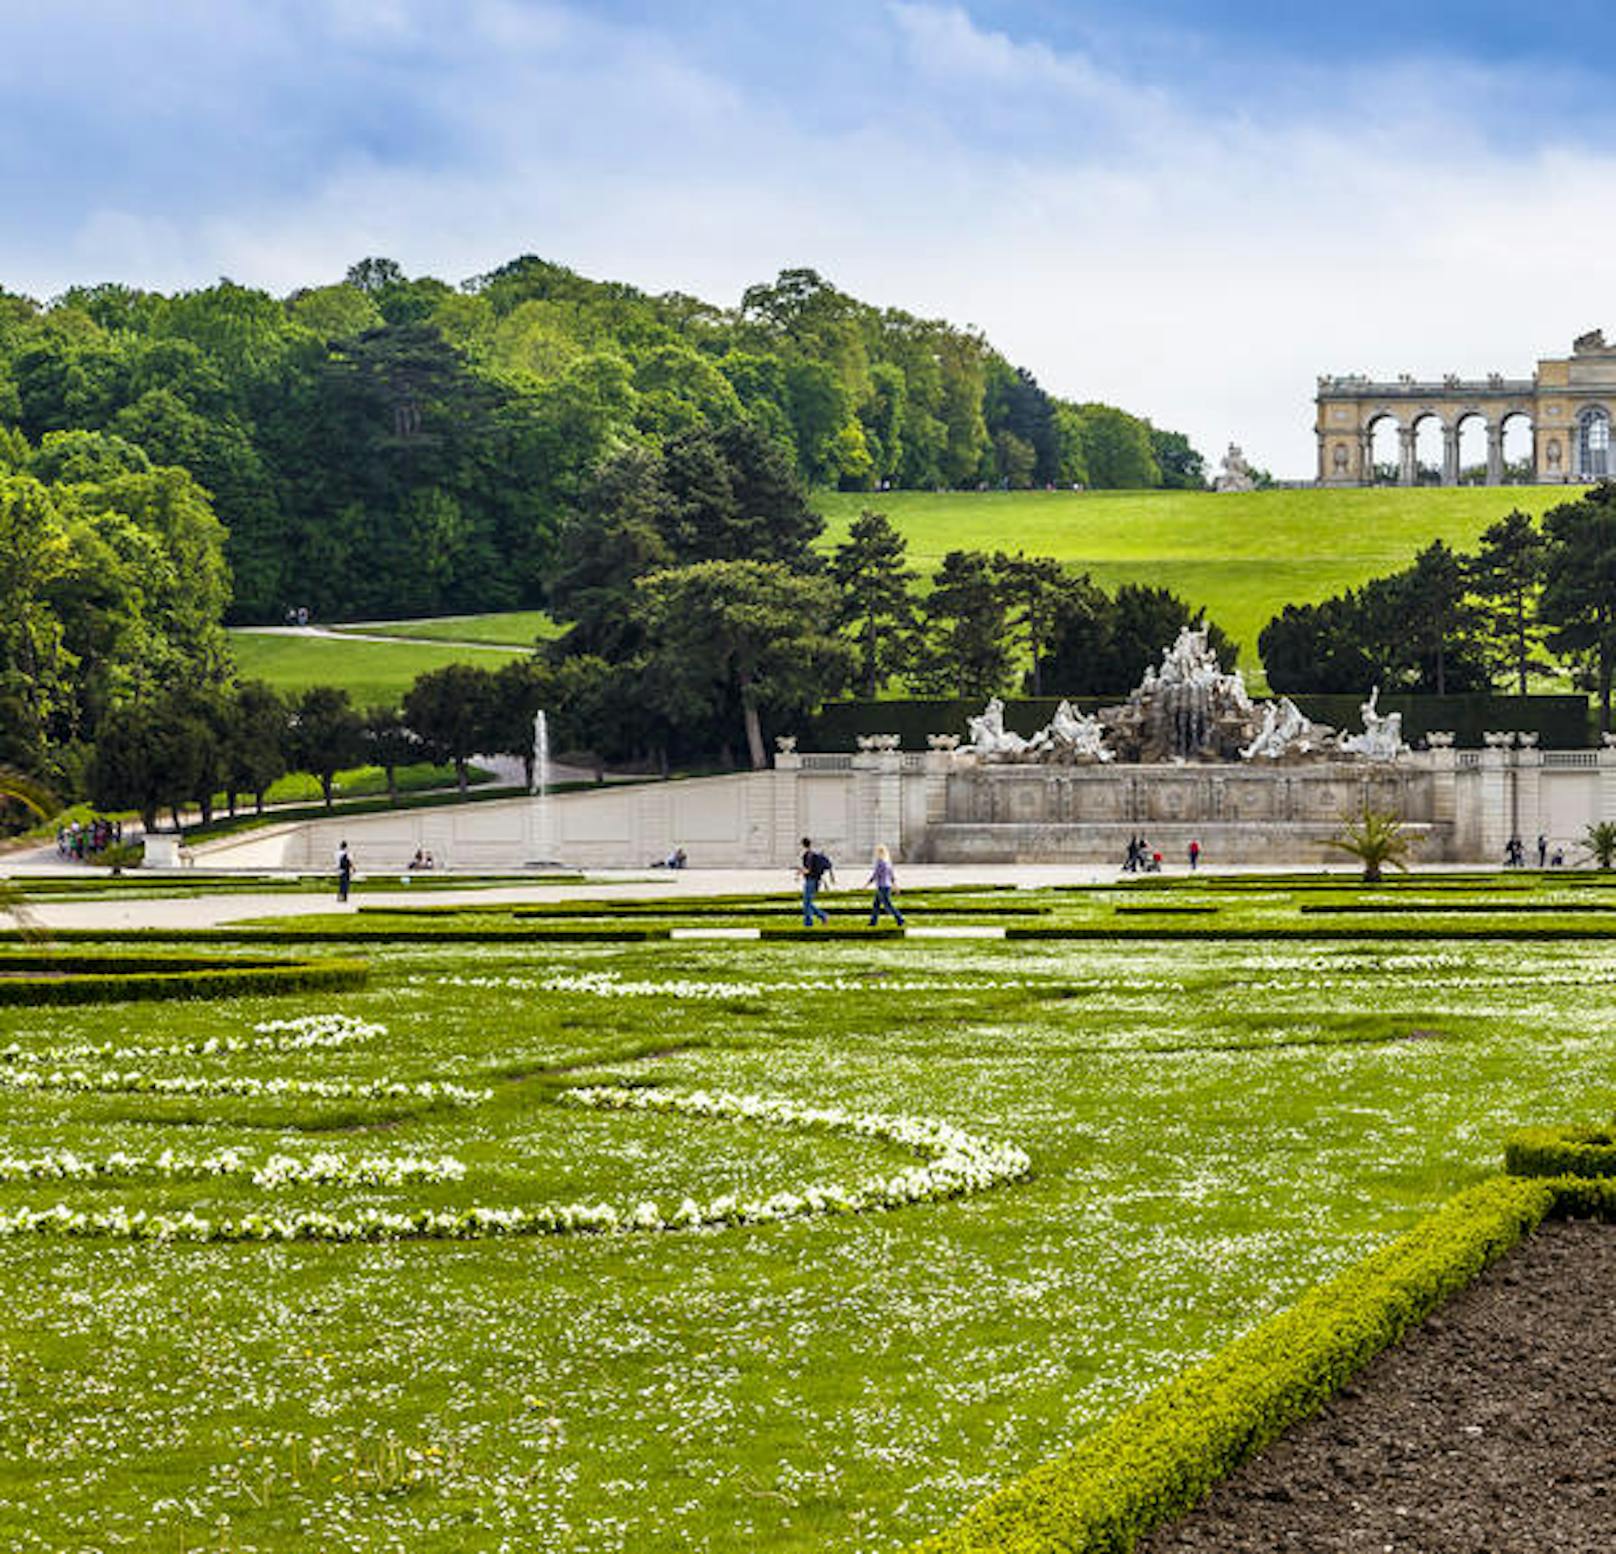 <b>Schlossgarten Schönbrunn mit Gloriette, 13. Bezirk:</b> Ab 1743 wurde das Schloss und der Park unter Kaiserin Maria Theresia in seiner jetzigen Form angelegt. Seit 1996 ist schloss Schönbrunn Teil des UNESCO-Welkulturerbes.